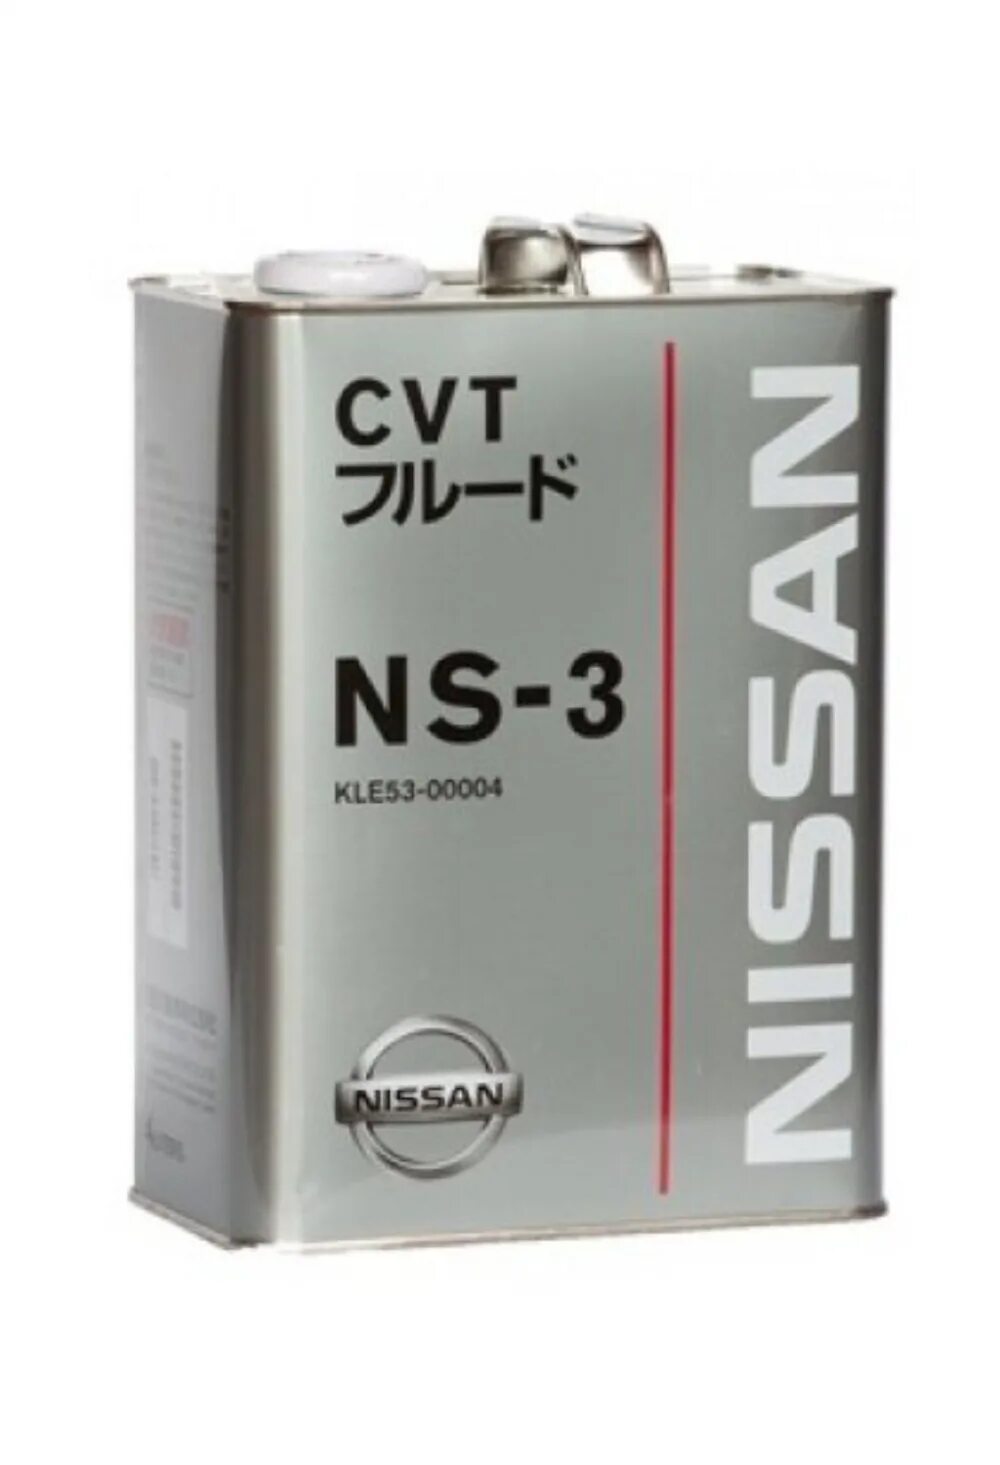 Масло трансмиссионное nissan cvt. Nissan CVT NS-3 4л. Kle53-00004. Nissan NS-3 CVT Fluid. Масло Ниссан CVT NS-3. Масло NS-3 CVT для Ниссан артикул.